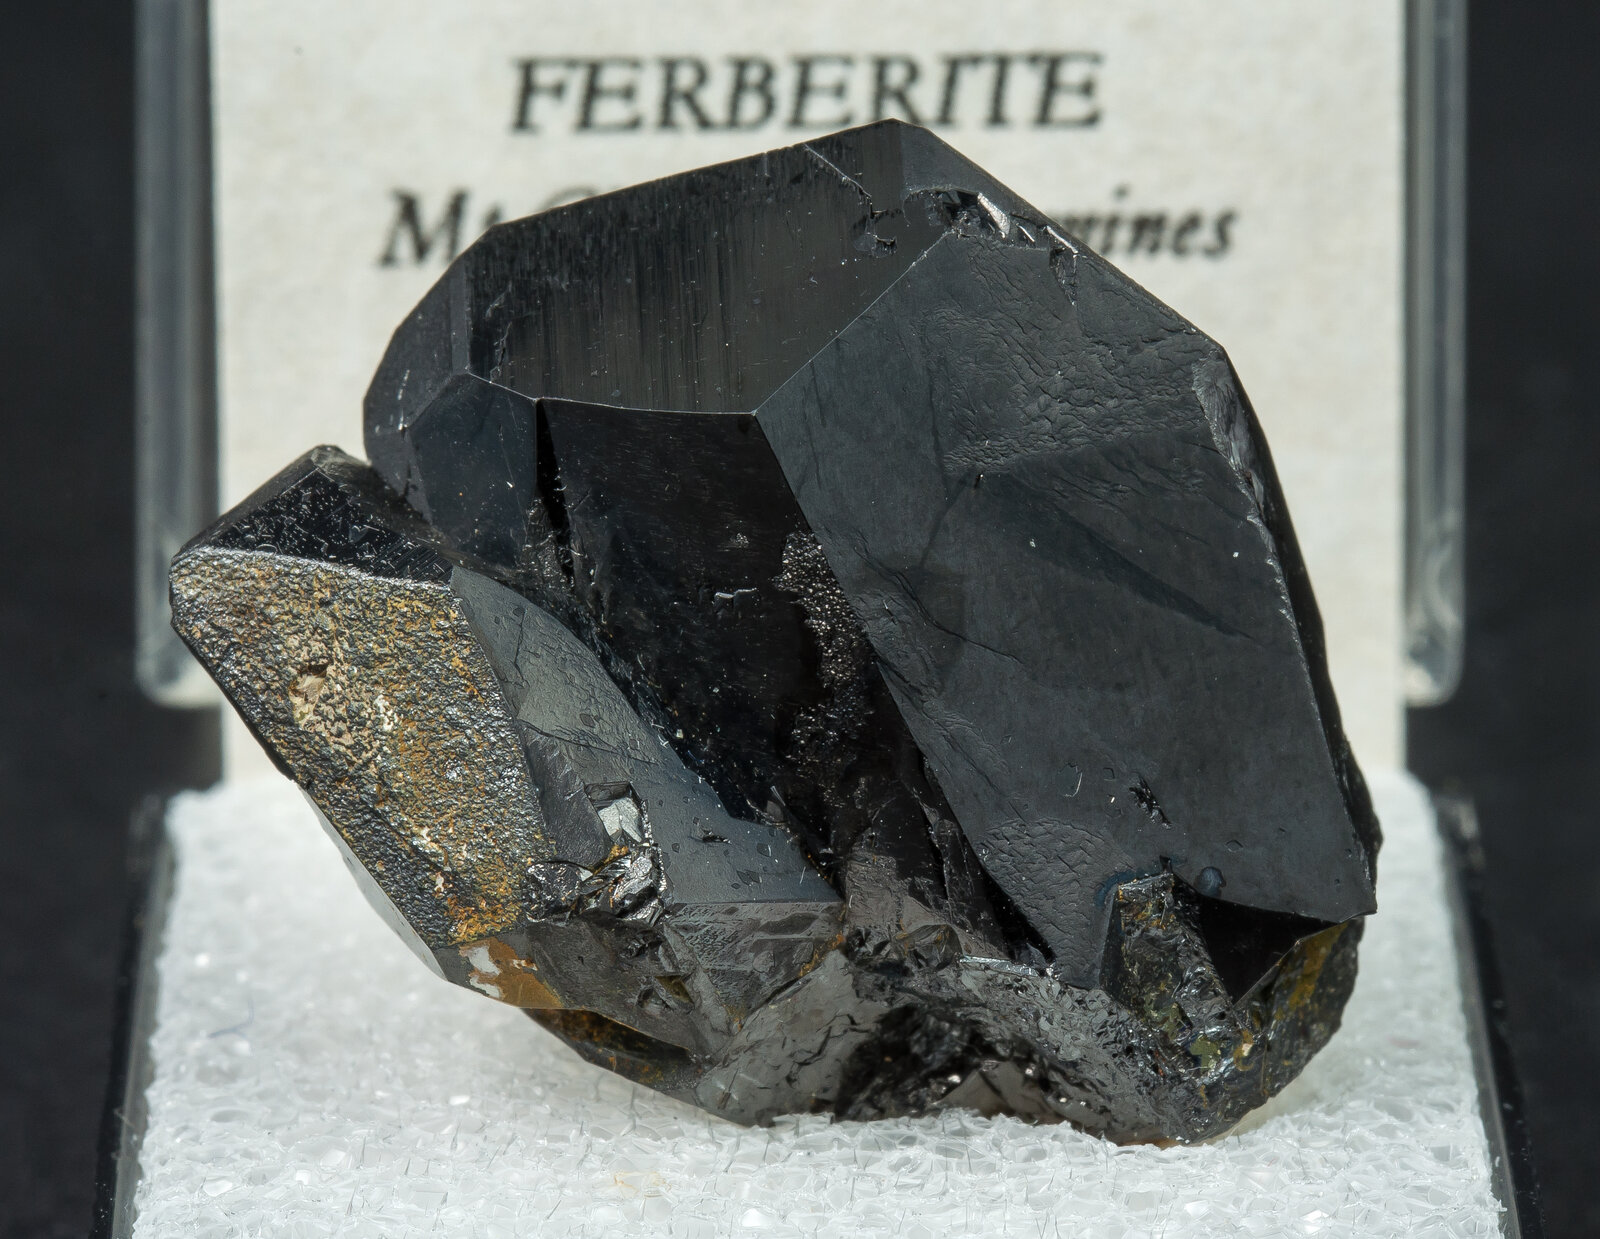 specimens/s_imagesAN9/Ferberite-TEL64AN9f2.jpg